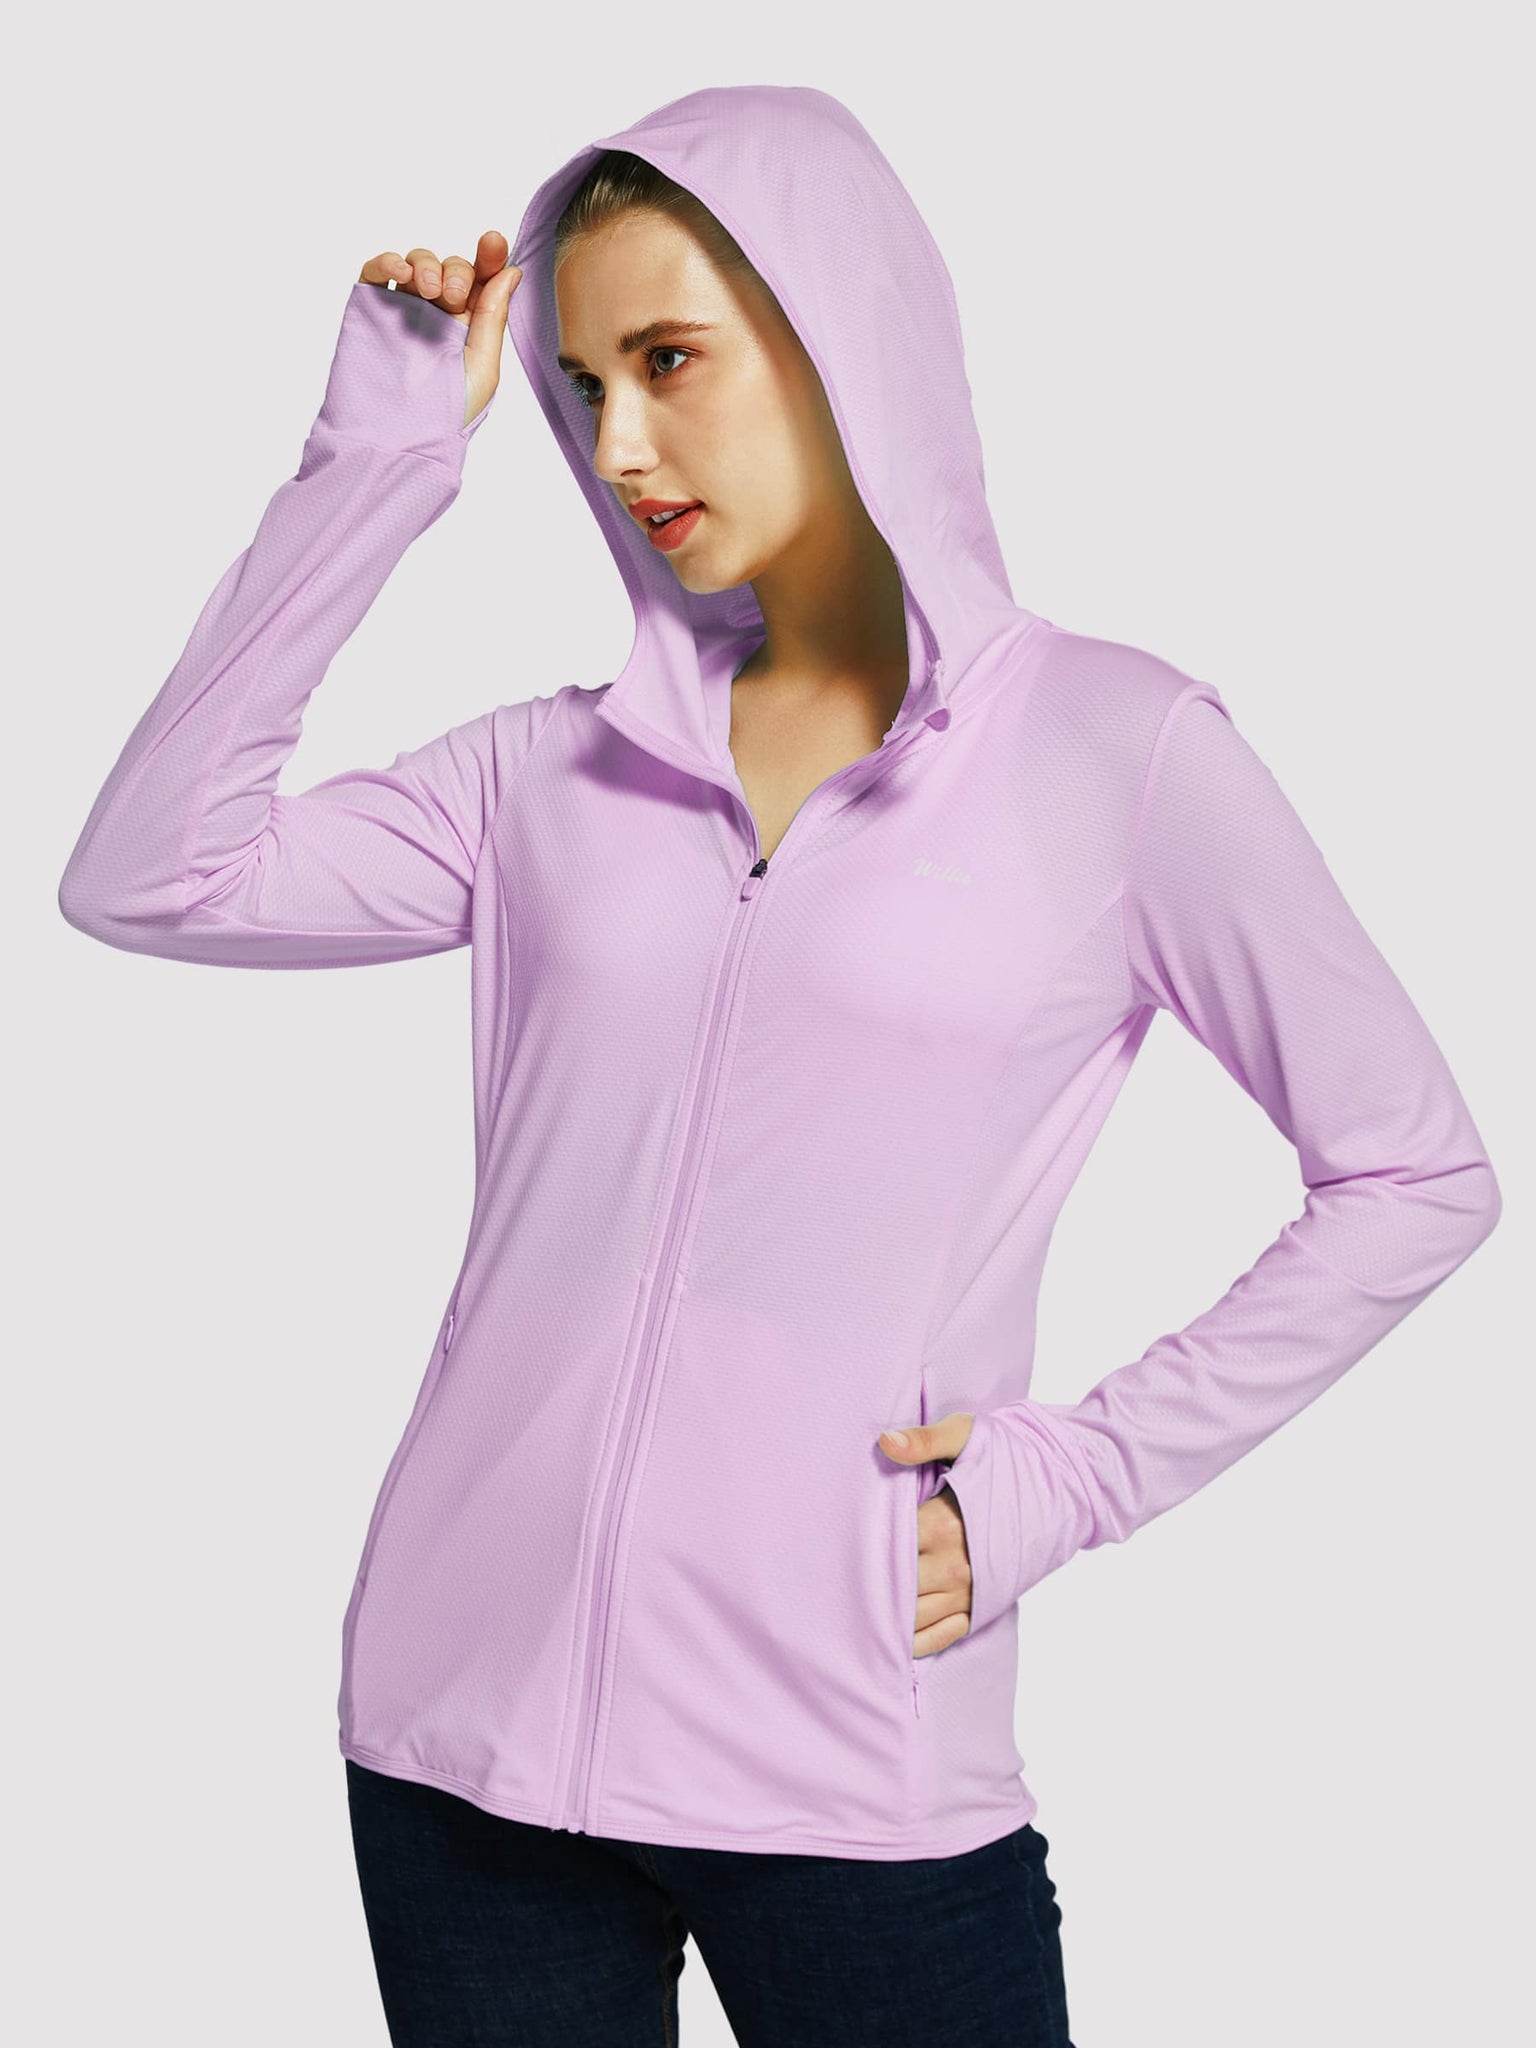 Willit Women's Outdoor Sun Protection Jacket Full Zip_Purple_model1